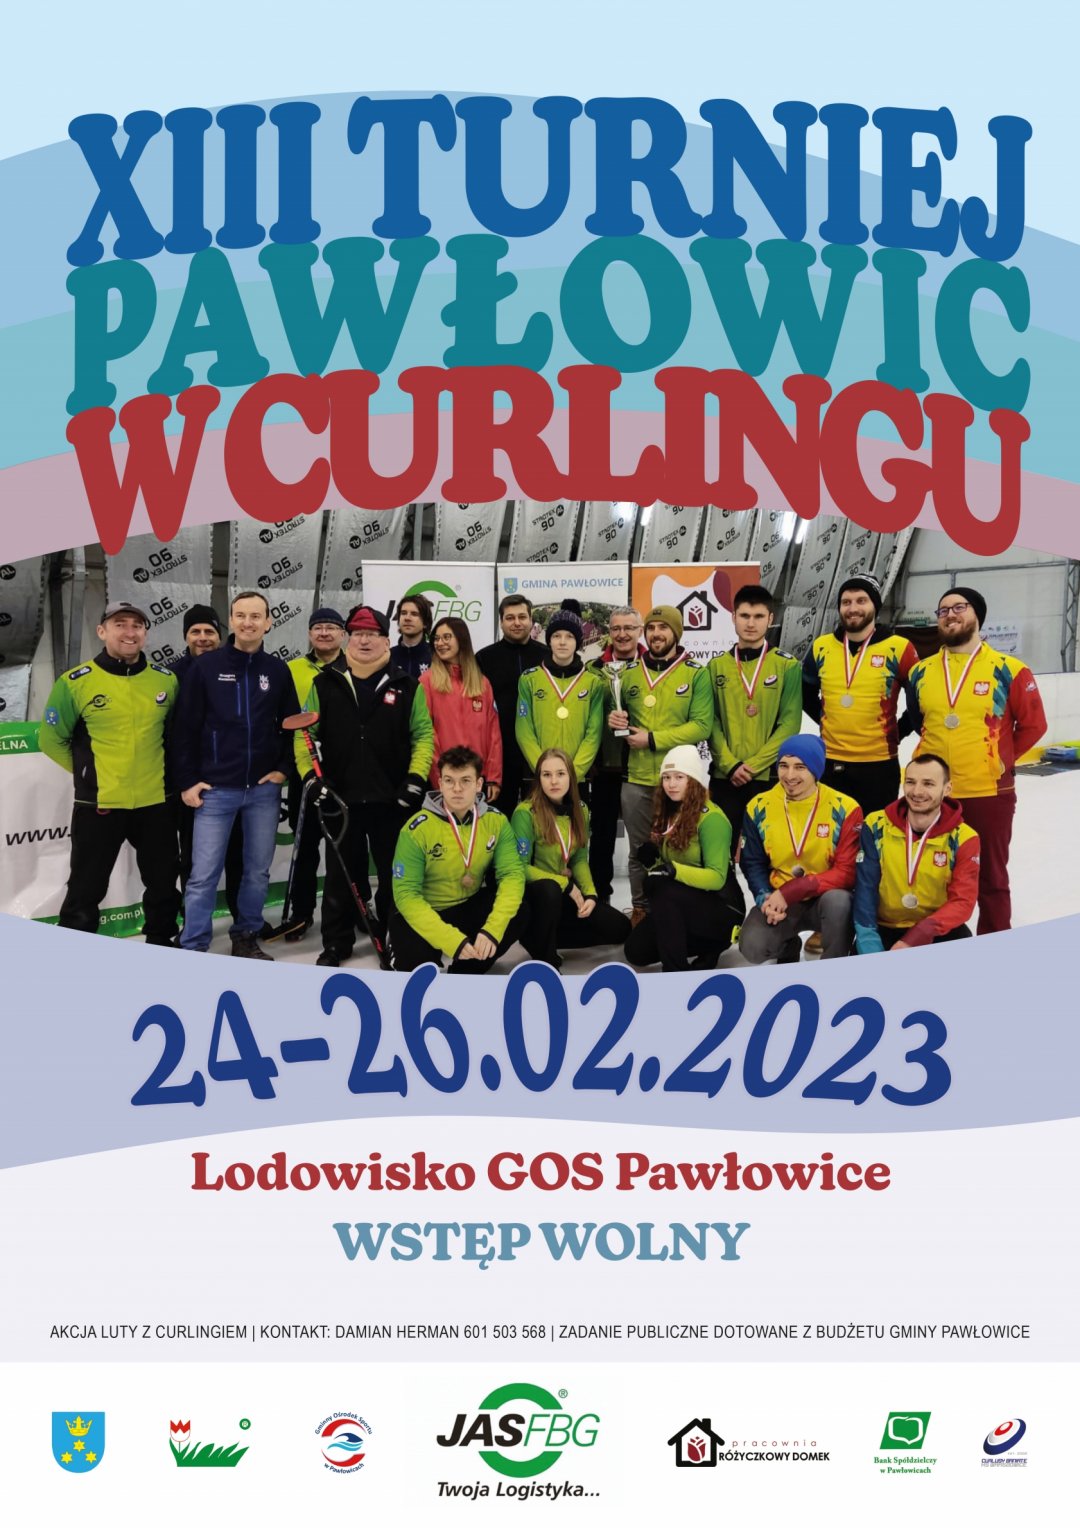 XIII Turniej Pawłowic w curlingu 2023